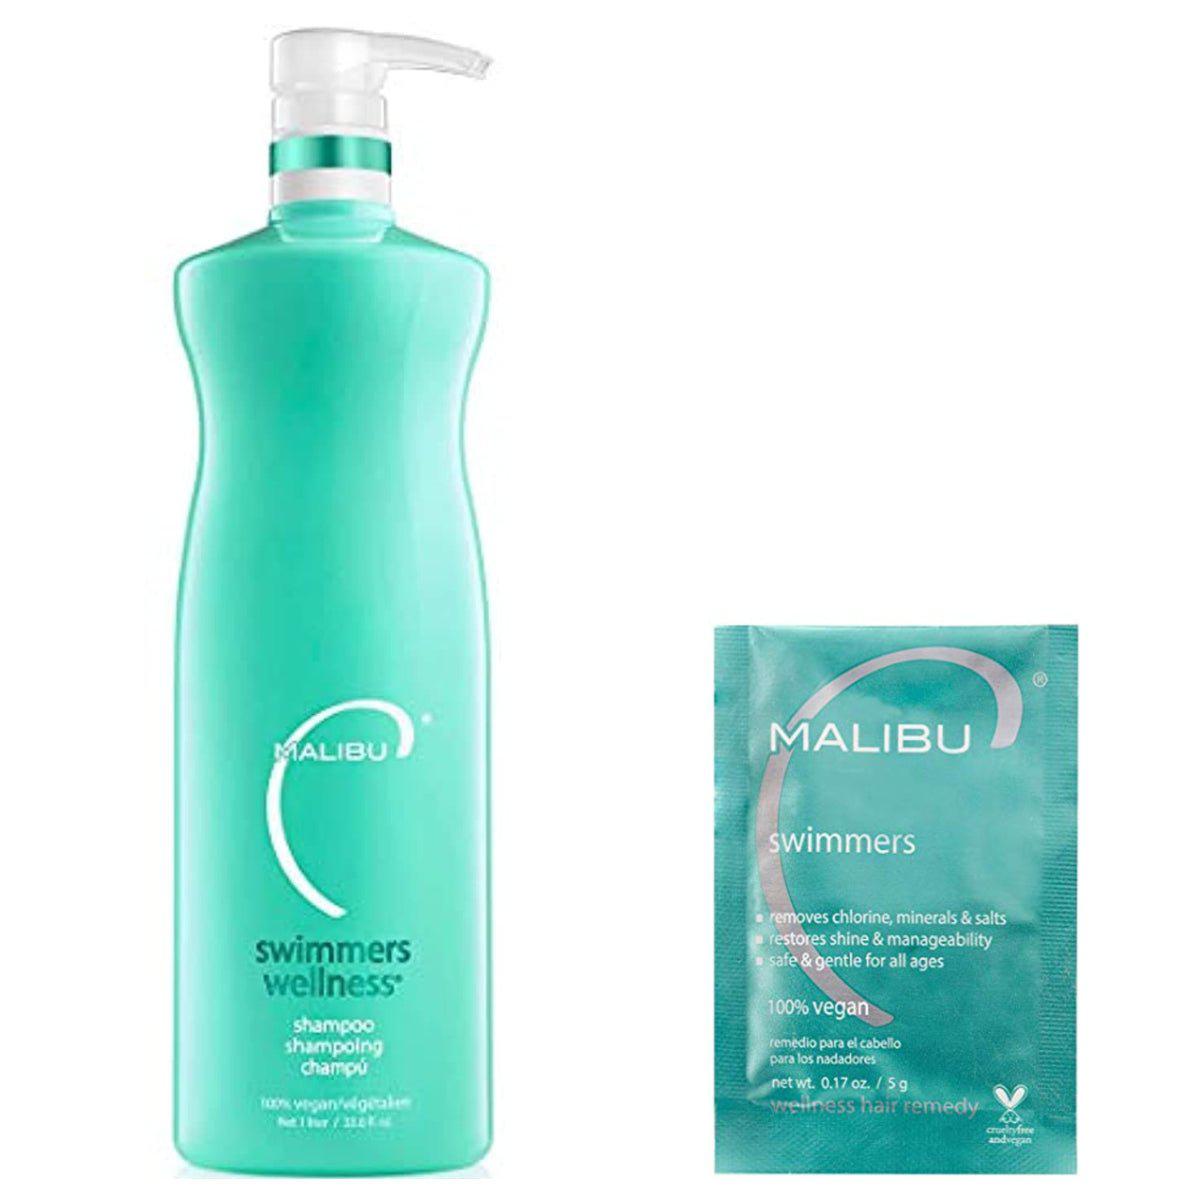 Malibu C Swimmers Shampoo 33.8oz and Crystal Gel Treatment 5g